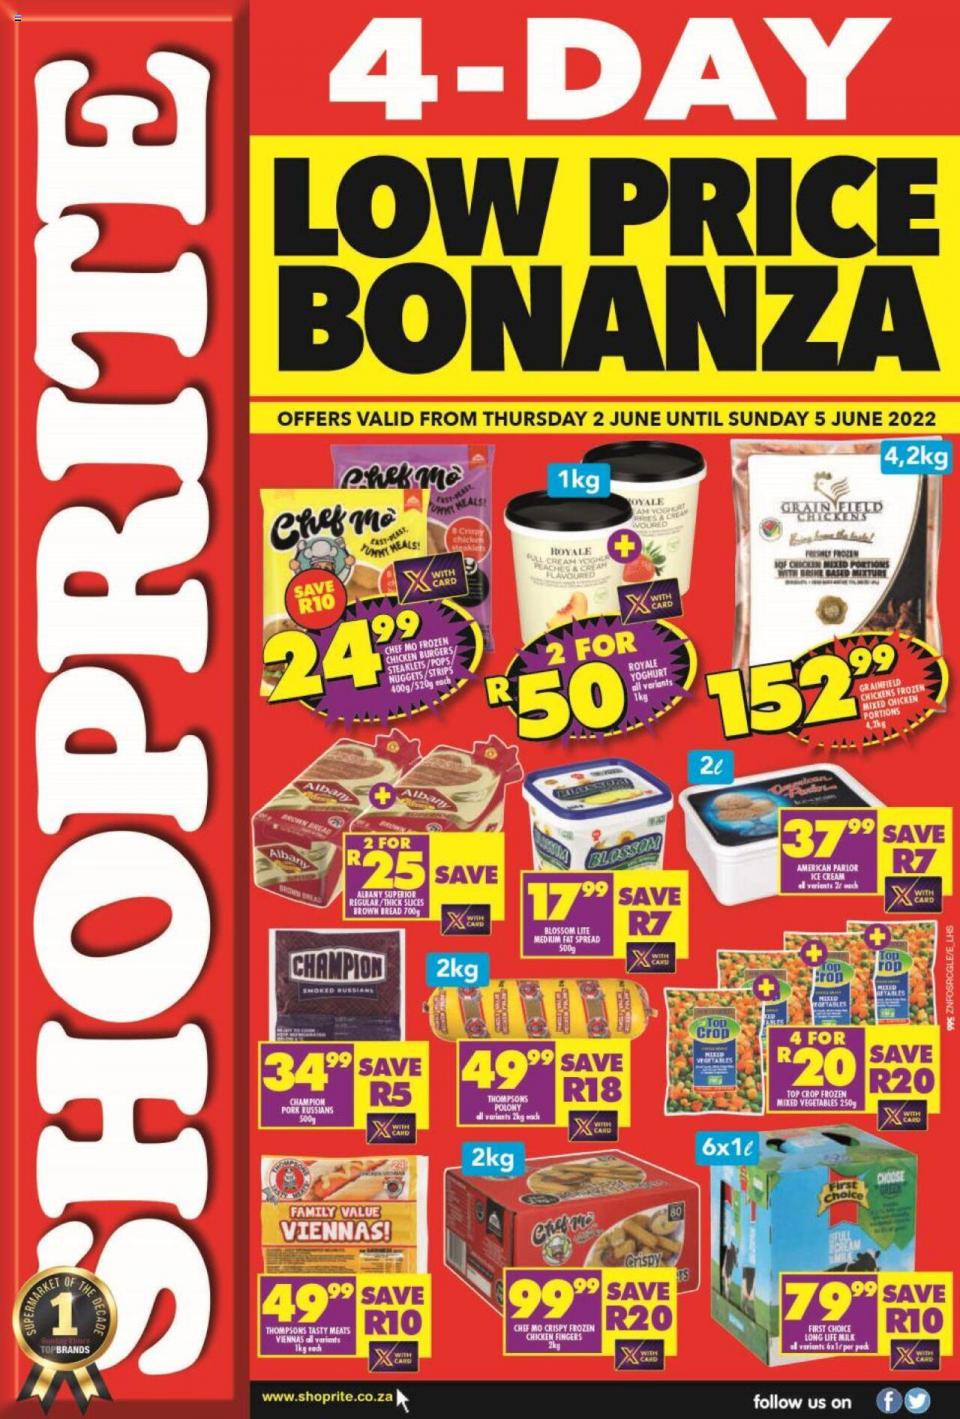 Shoprite Specials 4-Day Low Price Bonanza 2 – 5 June 2022